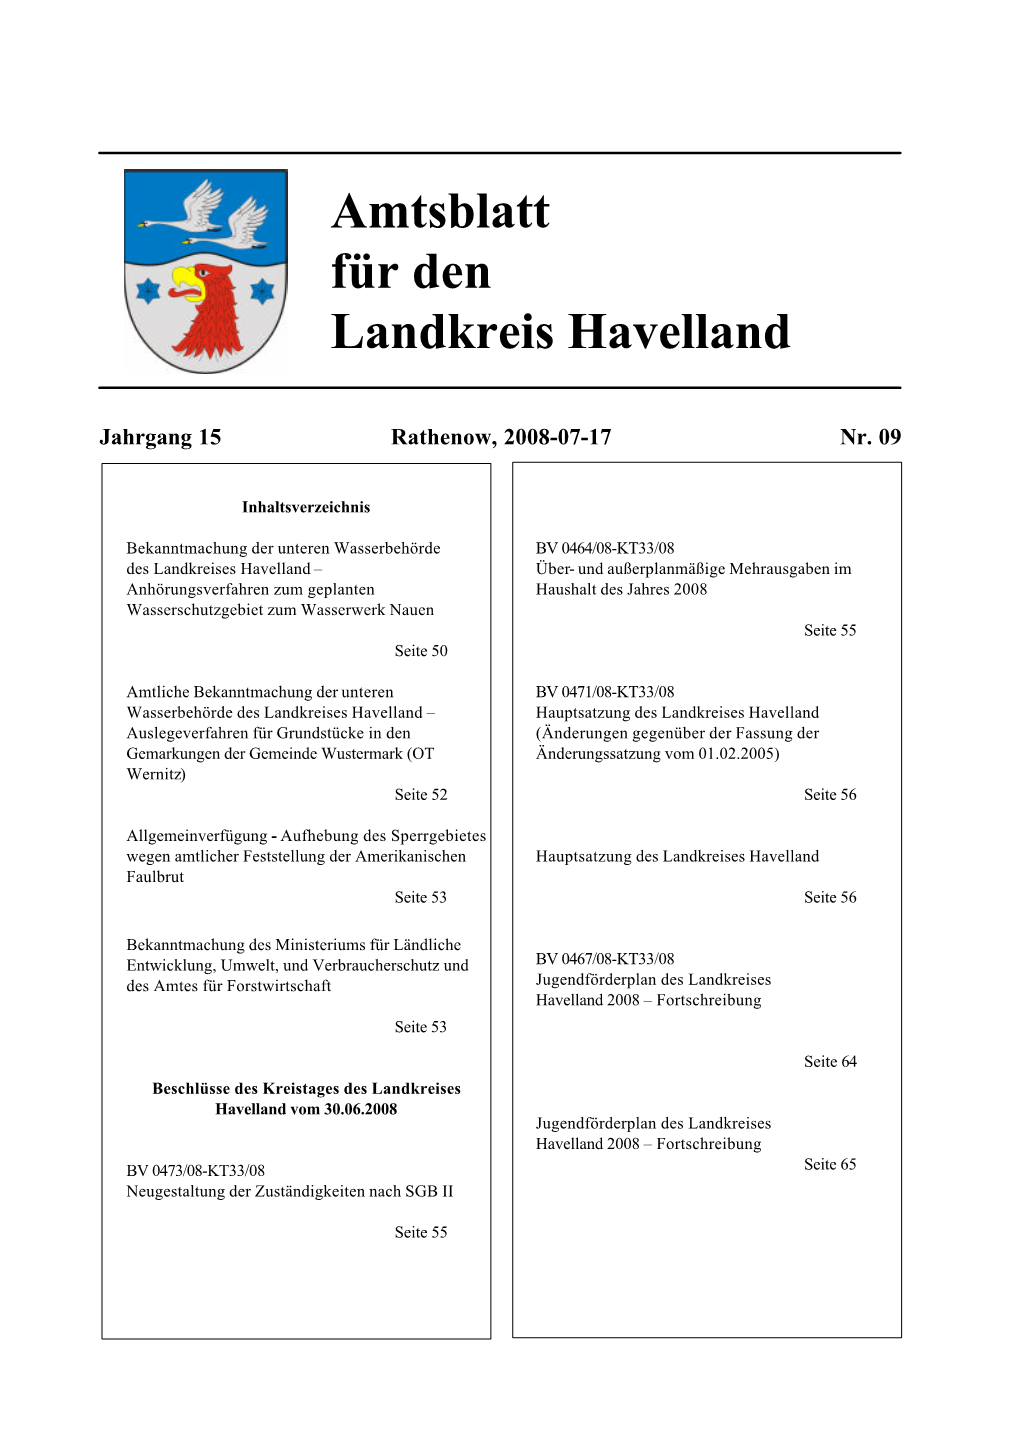 Amtsblatt 09/2008